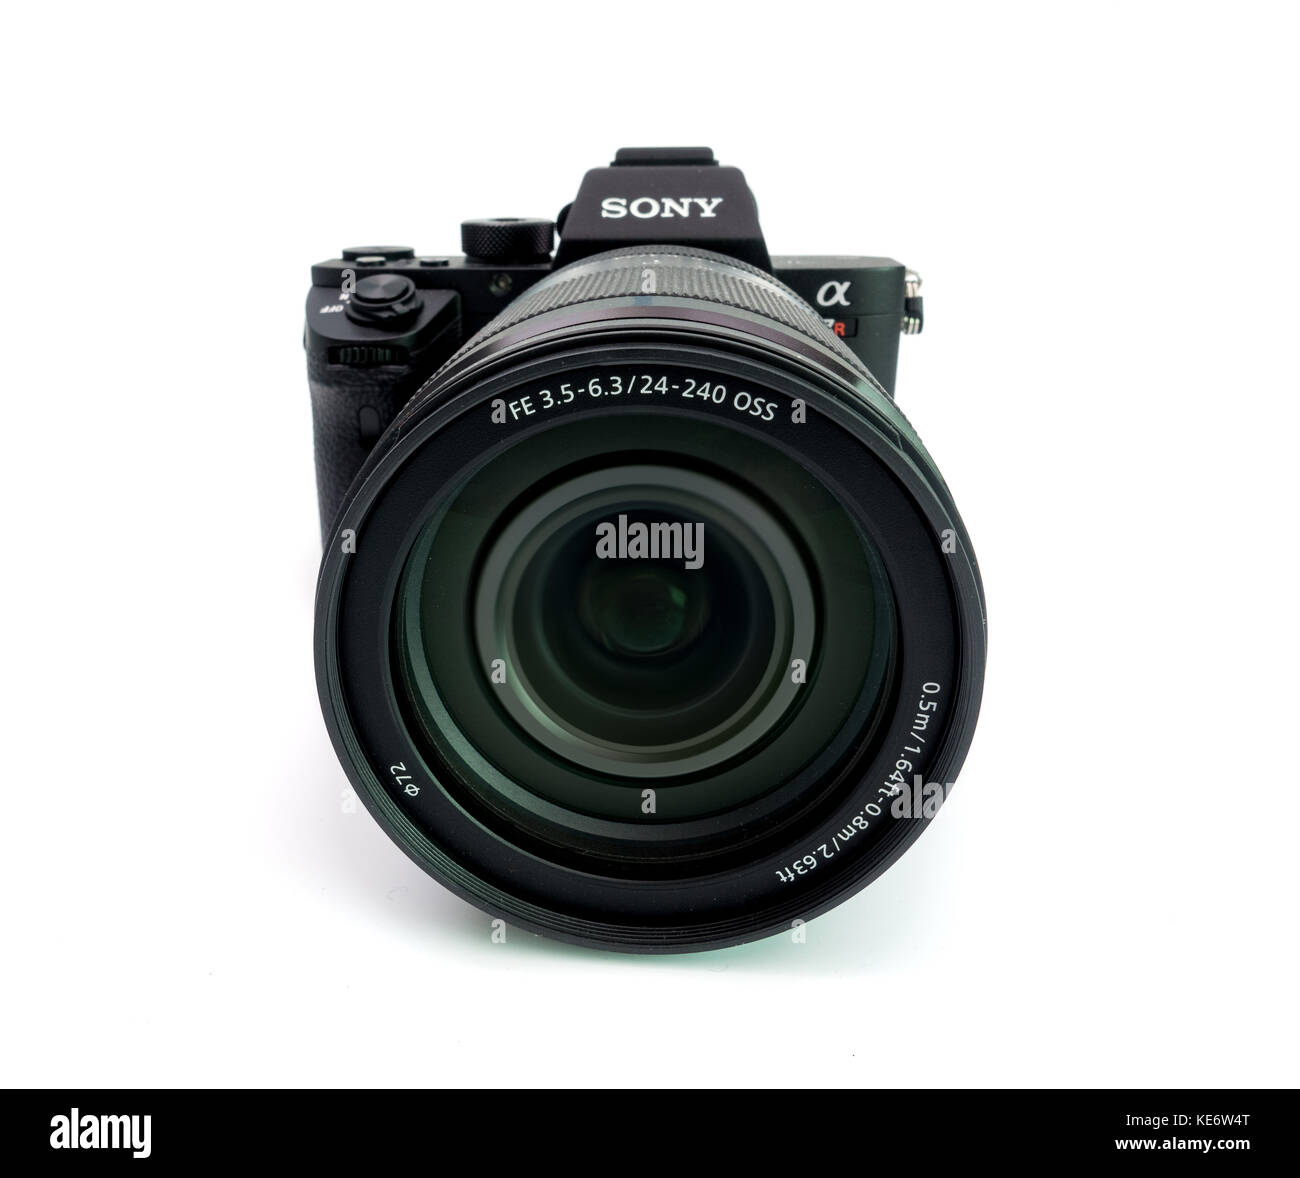 BERLIN, Deutschland - 6. Juni 2016: Sony a7R II Alpha spiegellose schnelle Fokussierung und 4 K-shooting Digitalkamera mit 24-240 mm-Objektiv von Sony Stockfoto